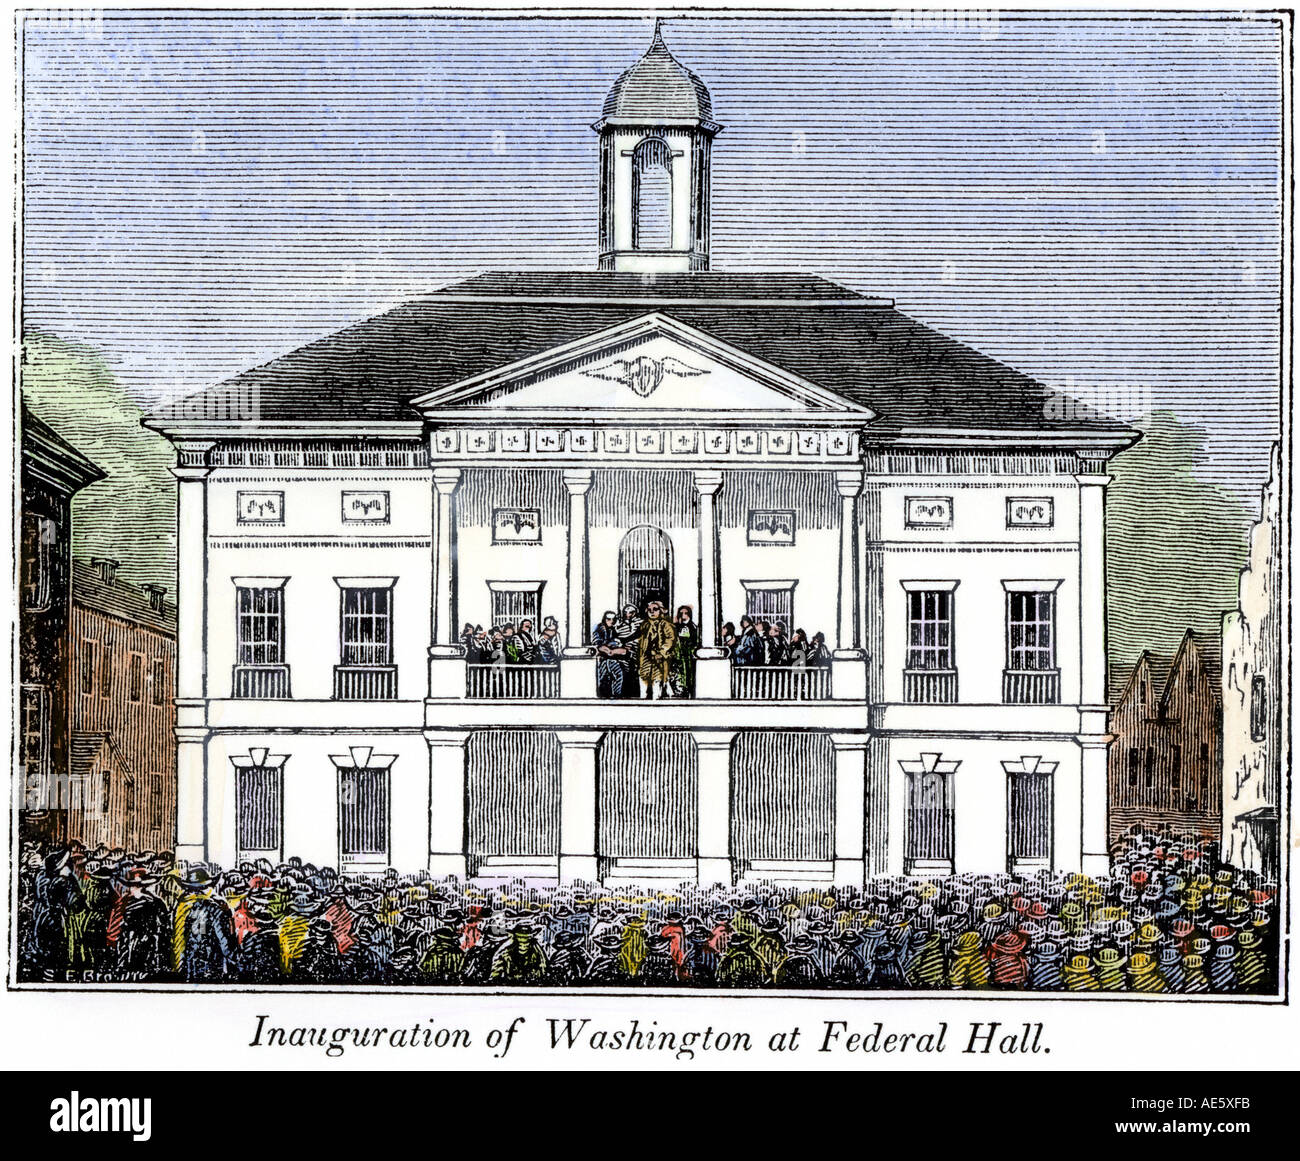 Federal Hall de New York durante la inauguración de George Washington como primer presidente de EE.UU. en 1789. Xilografía coloreada a mano Foto de stock